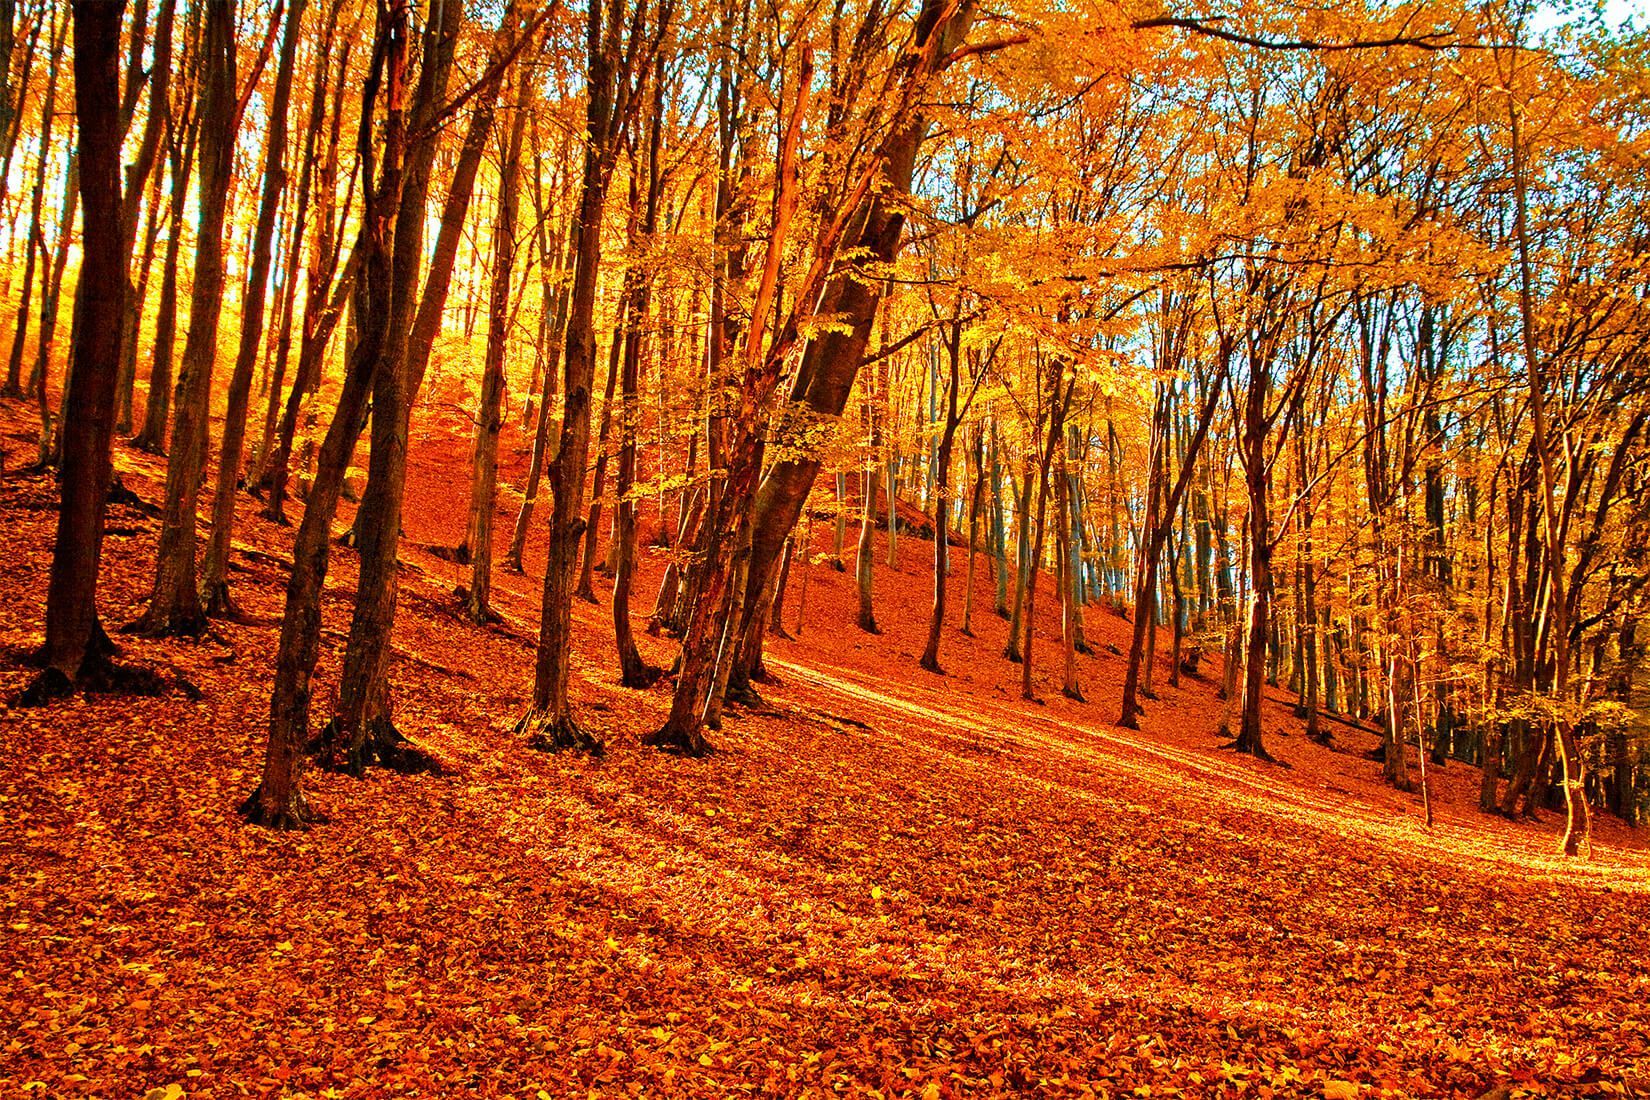 Autumn Forest Wallpaper Mural. Murals Wallpaper. Autumn forest, Forest wallpaper, Desktop wallpaper fall